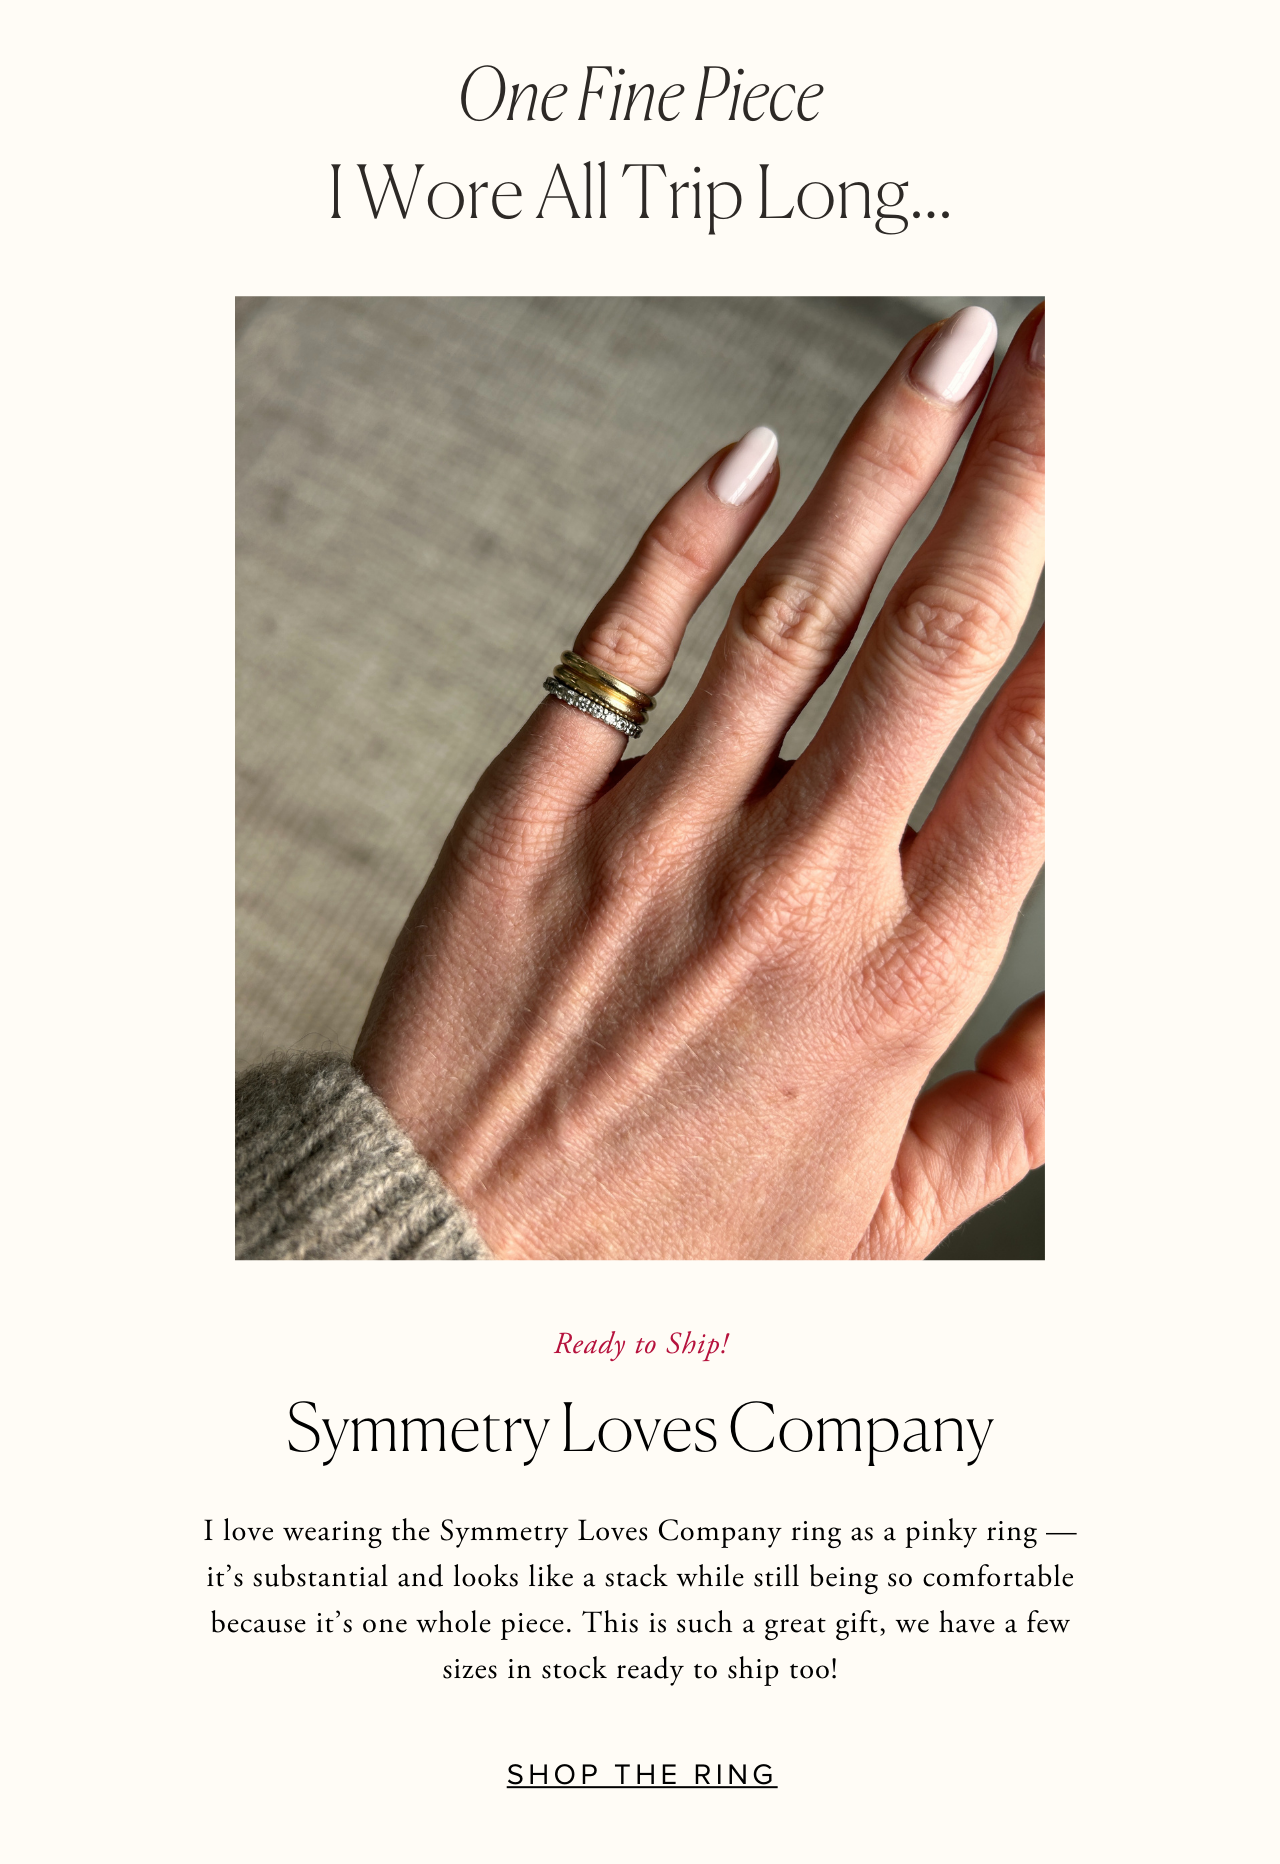 Symmetry Loves Company Ring